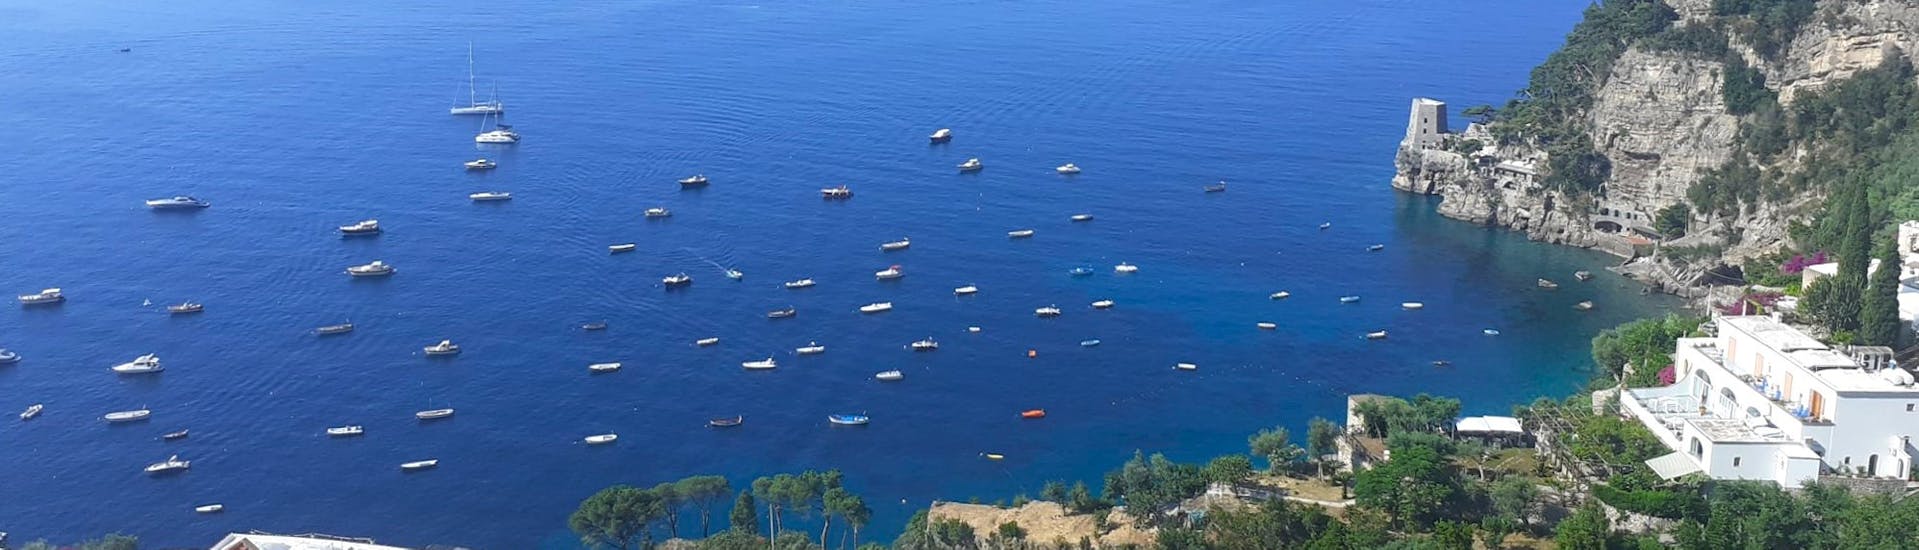 Blick auf die Amalfiküste von oben mit dem Bootsverleih in Positano an der Amalfiküste (bis zu 6 Personen)